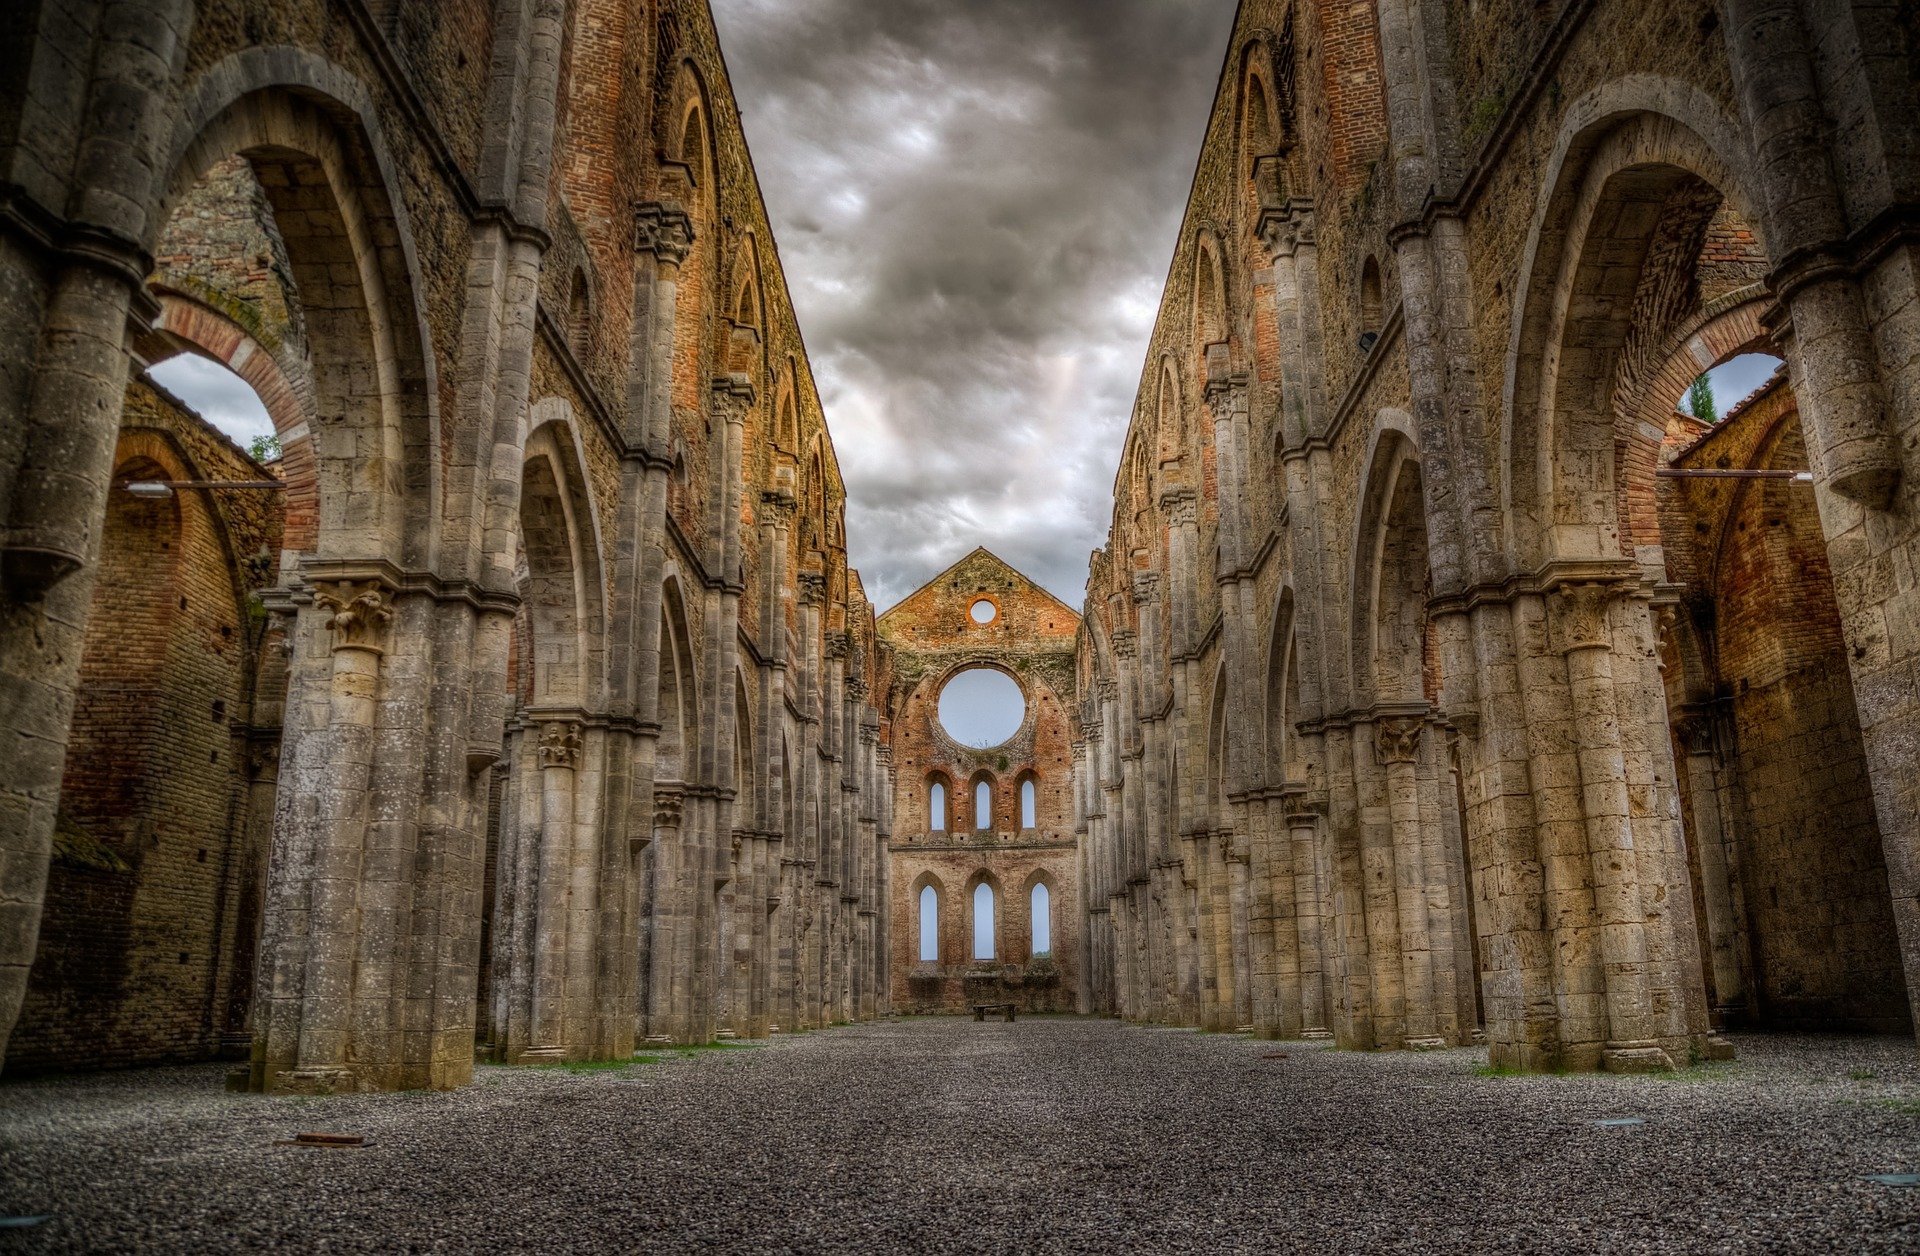 Kirche_Ruine_Wolke (c) Bild von Skitterphoto auf pixabay.de